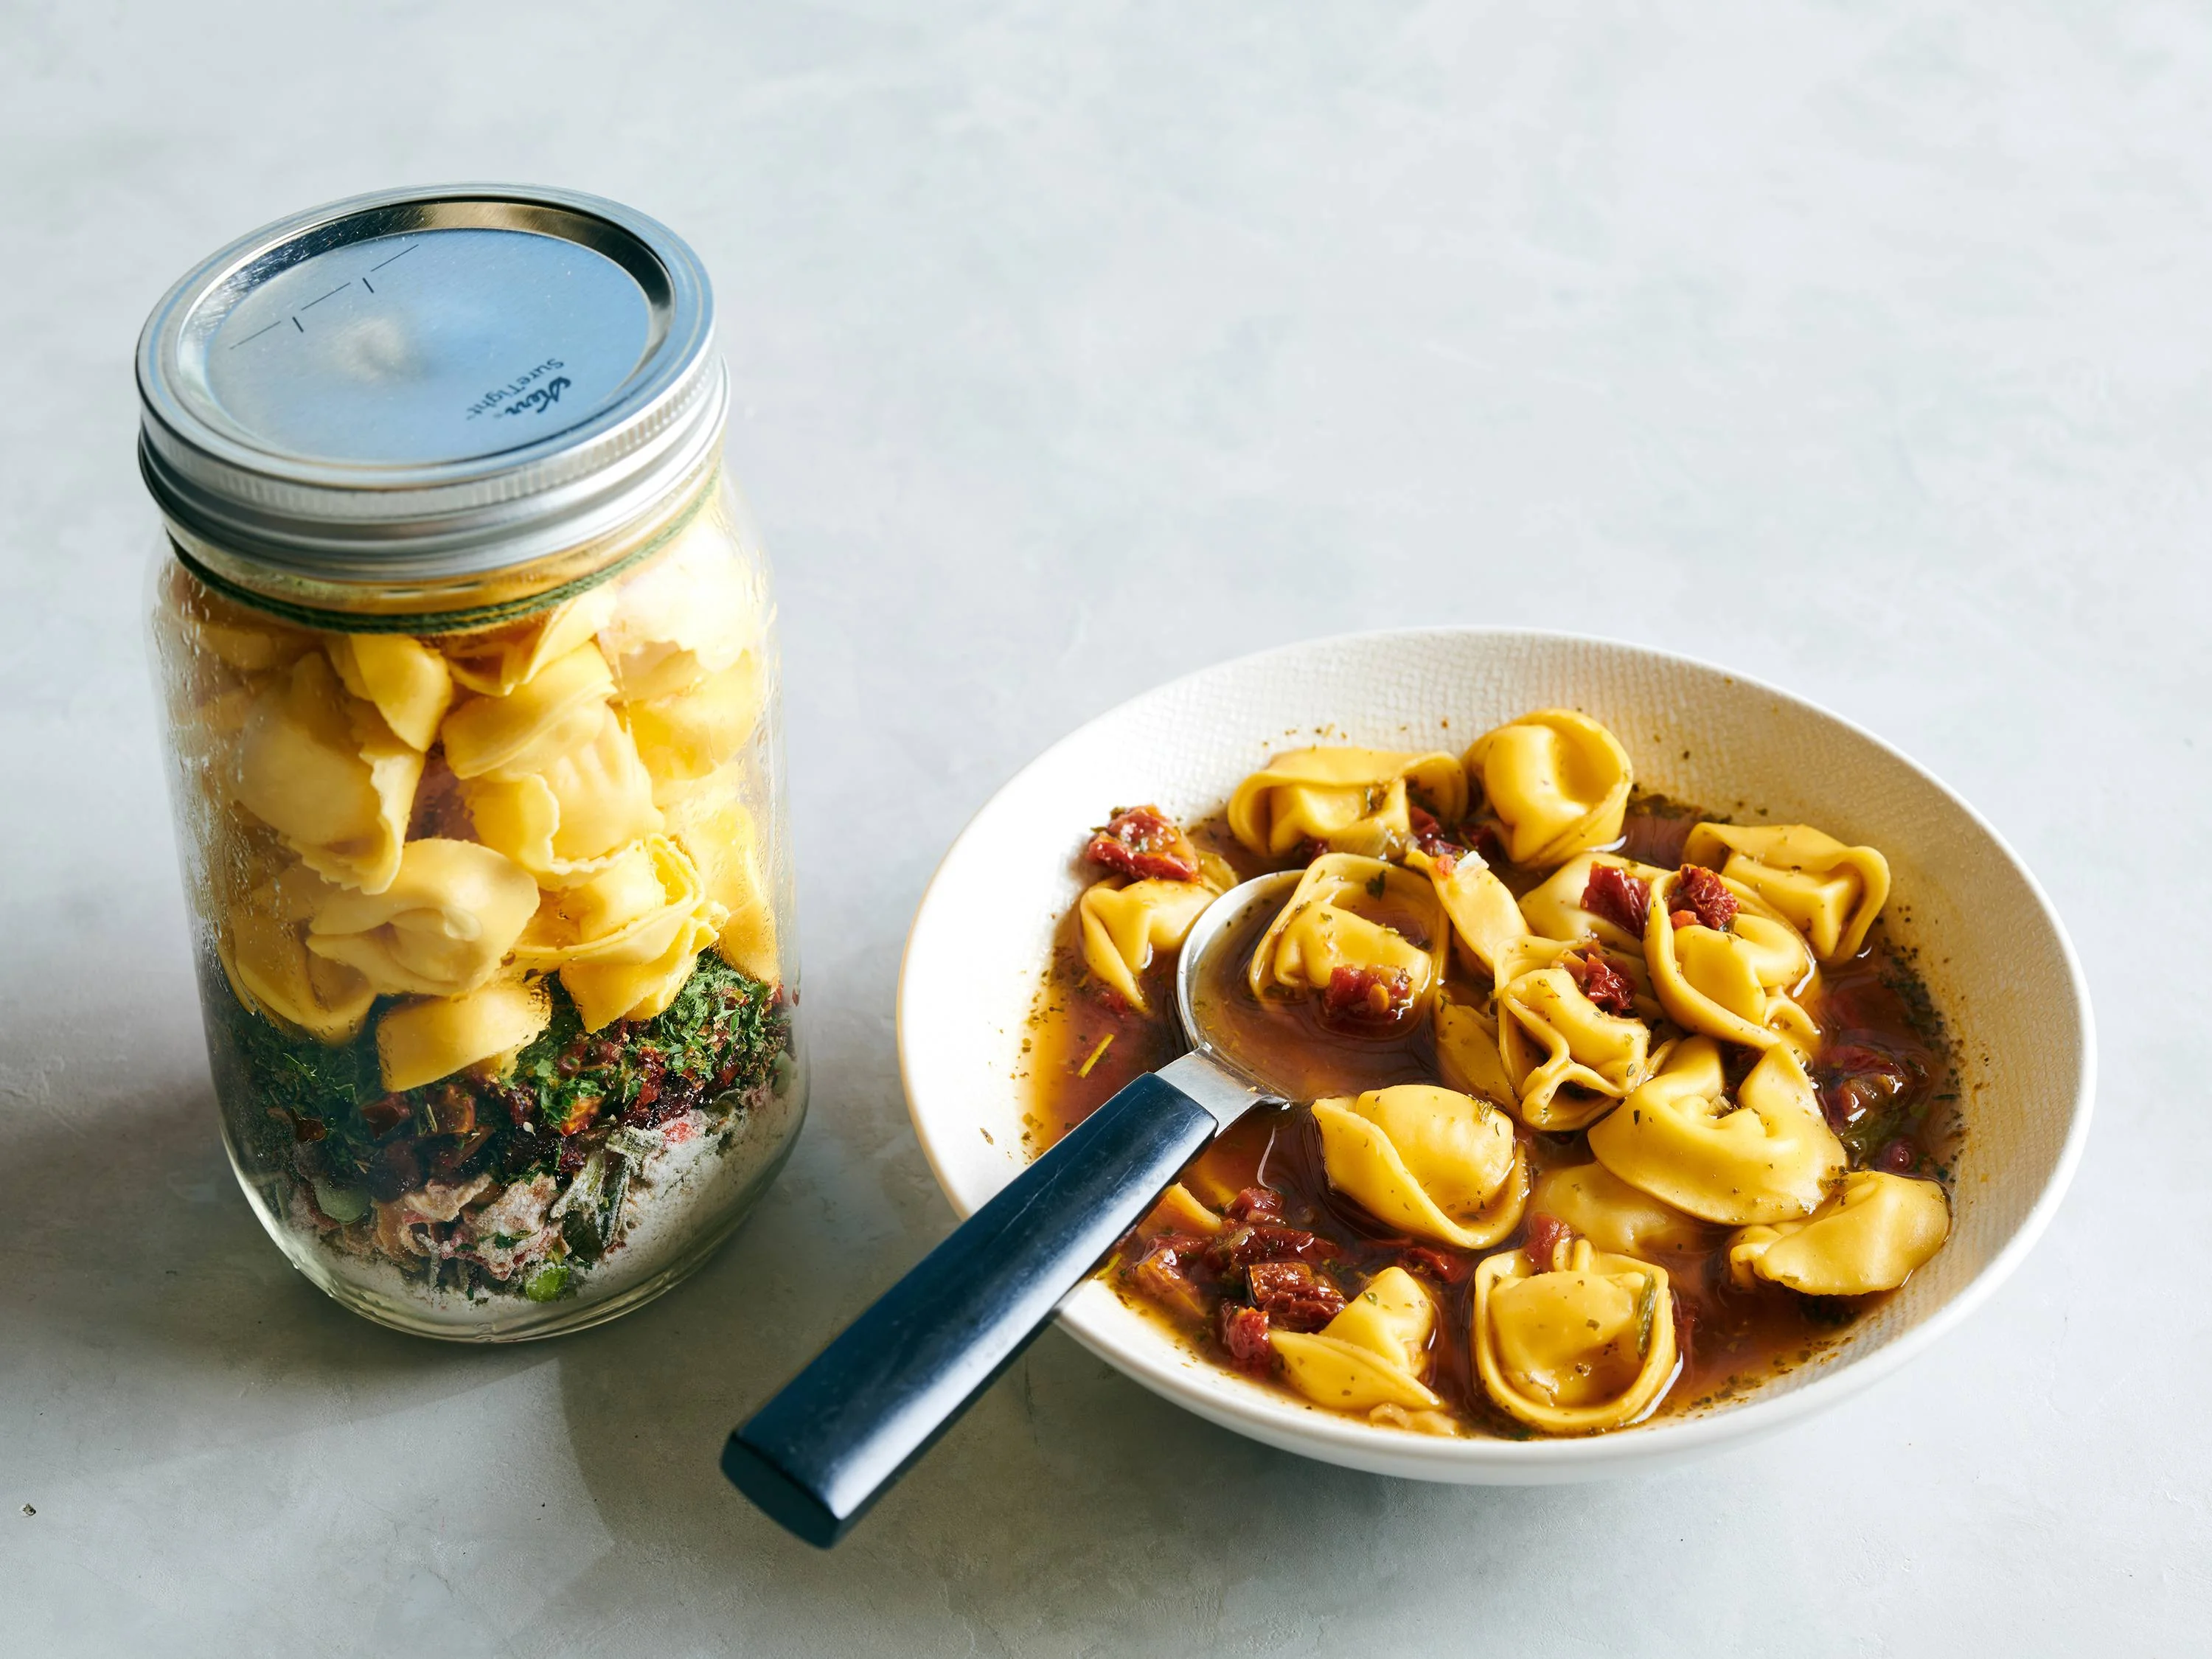 https://www.savoryonline.com/app/uploads/recipes/237010/italian-tortellini-soup-in-a-jar.jpg